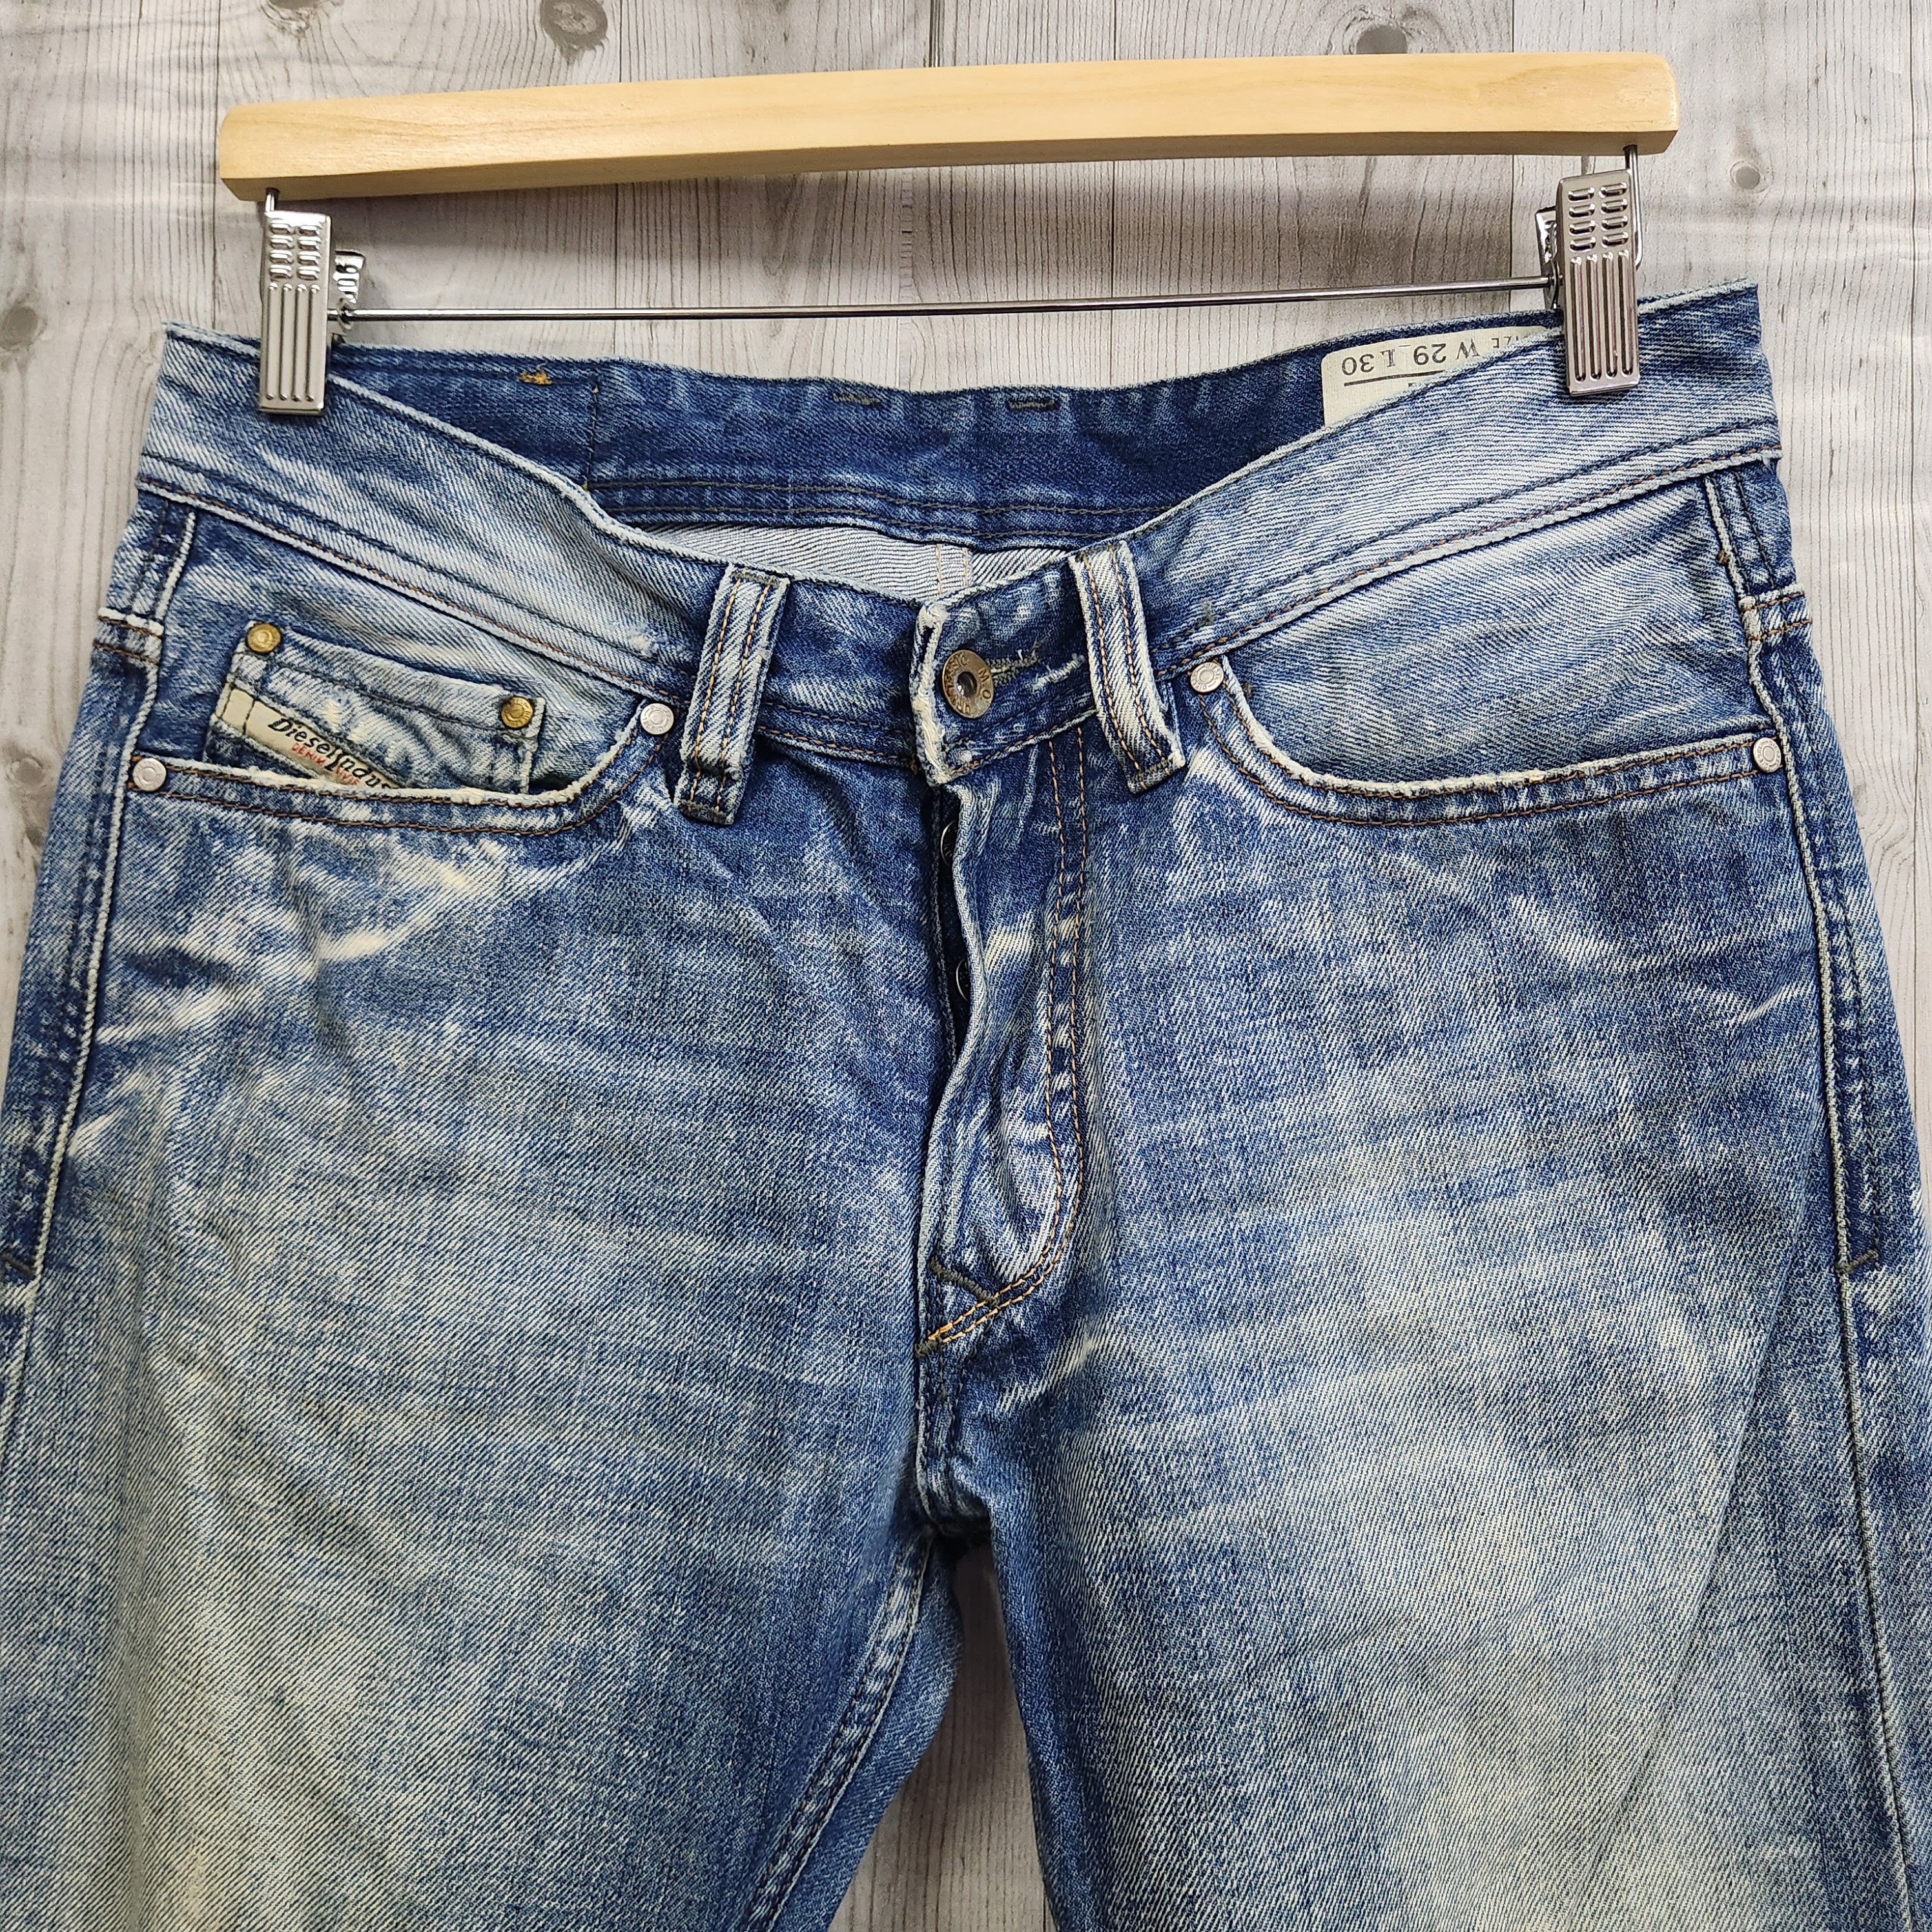 Distressed Denim Diesel Viker Jeans Made In Italy - 19